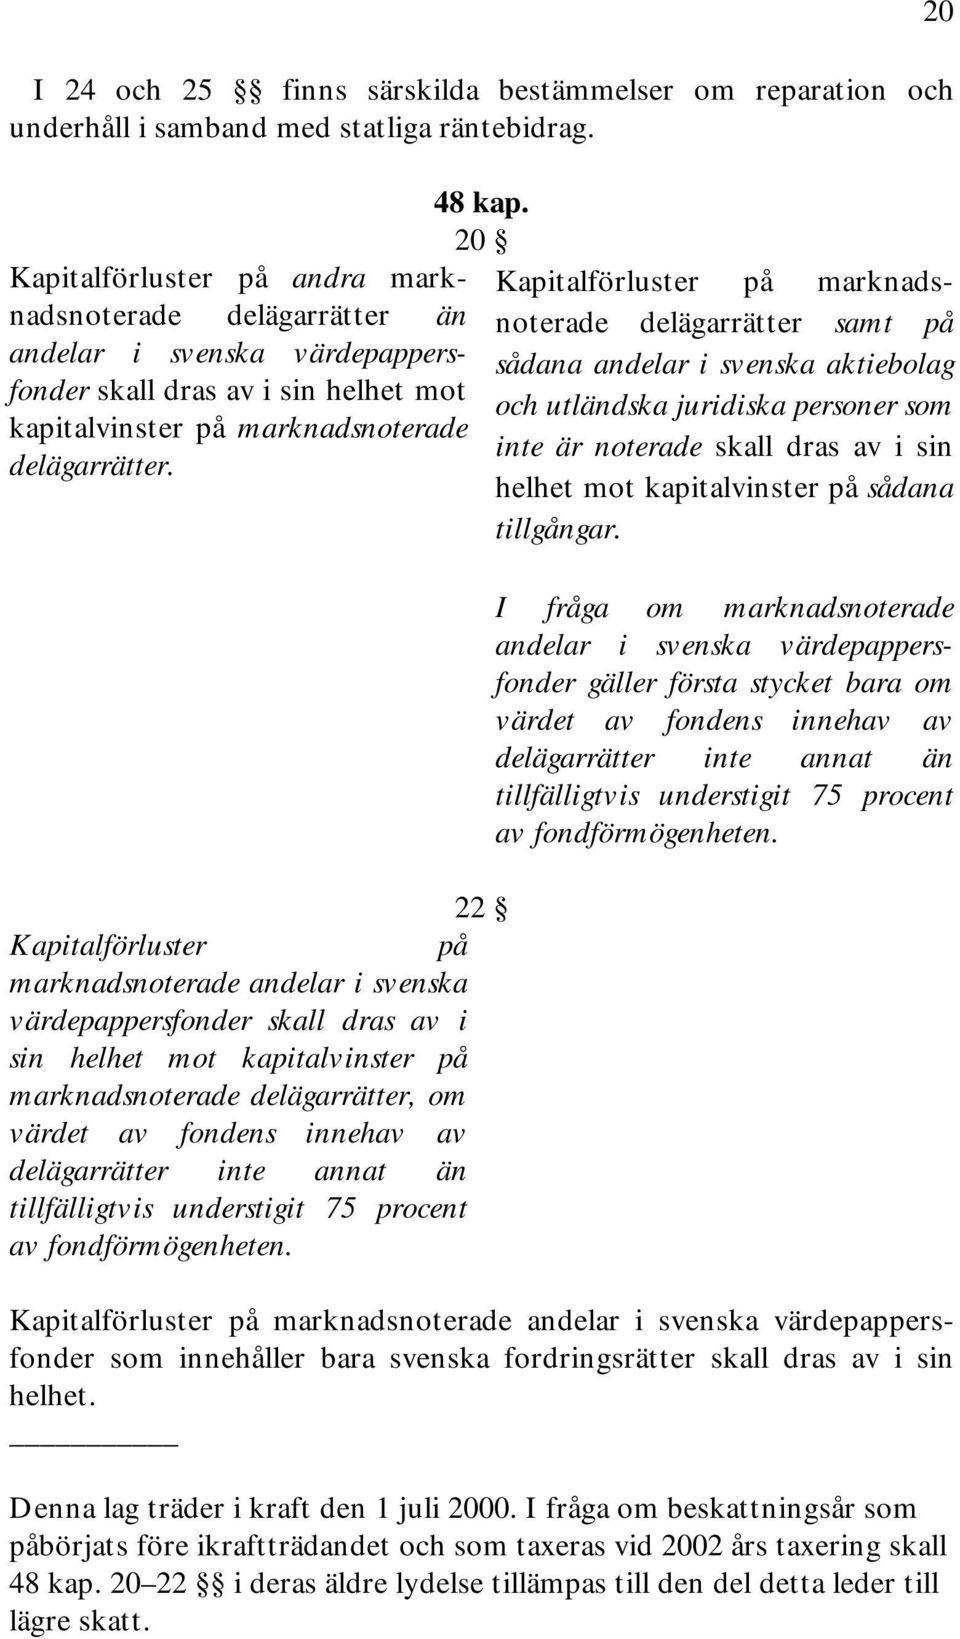 20 22 Kapitalförluster på marknadsnoterade andelar i svenska värdepappersfonder skall dras av i sin helhet mot kapitalvinster på marknadsnoterade delägarrätter, om värdet av fondens innehav av